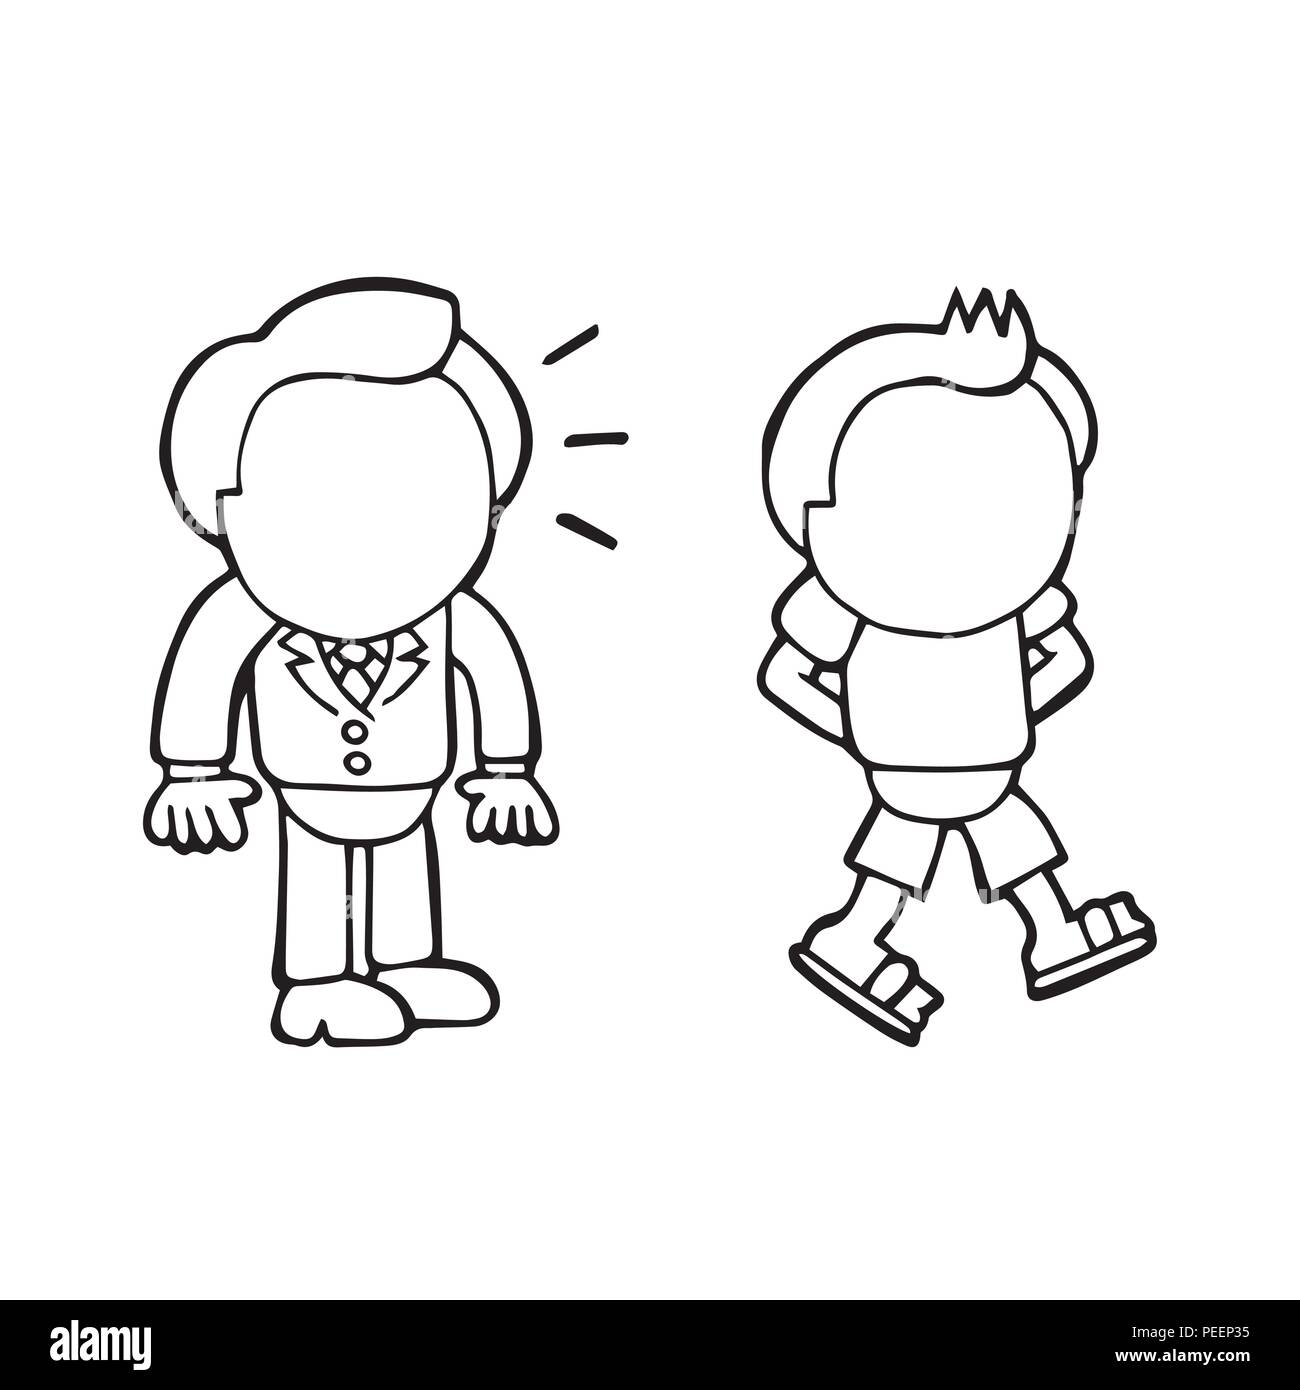 Vektor hand gezeichnete Karikatur Illustration der Geschäftsmann auf der Suche und Neid happy-go-lucky man Wandern in lässige Kleidung. Stock Vektor